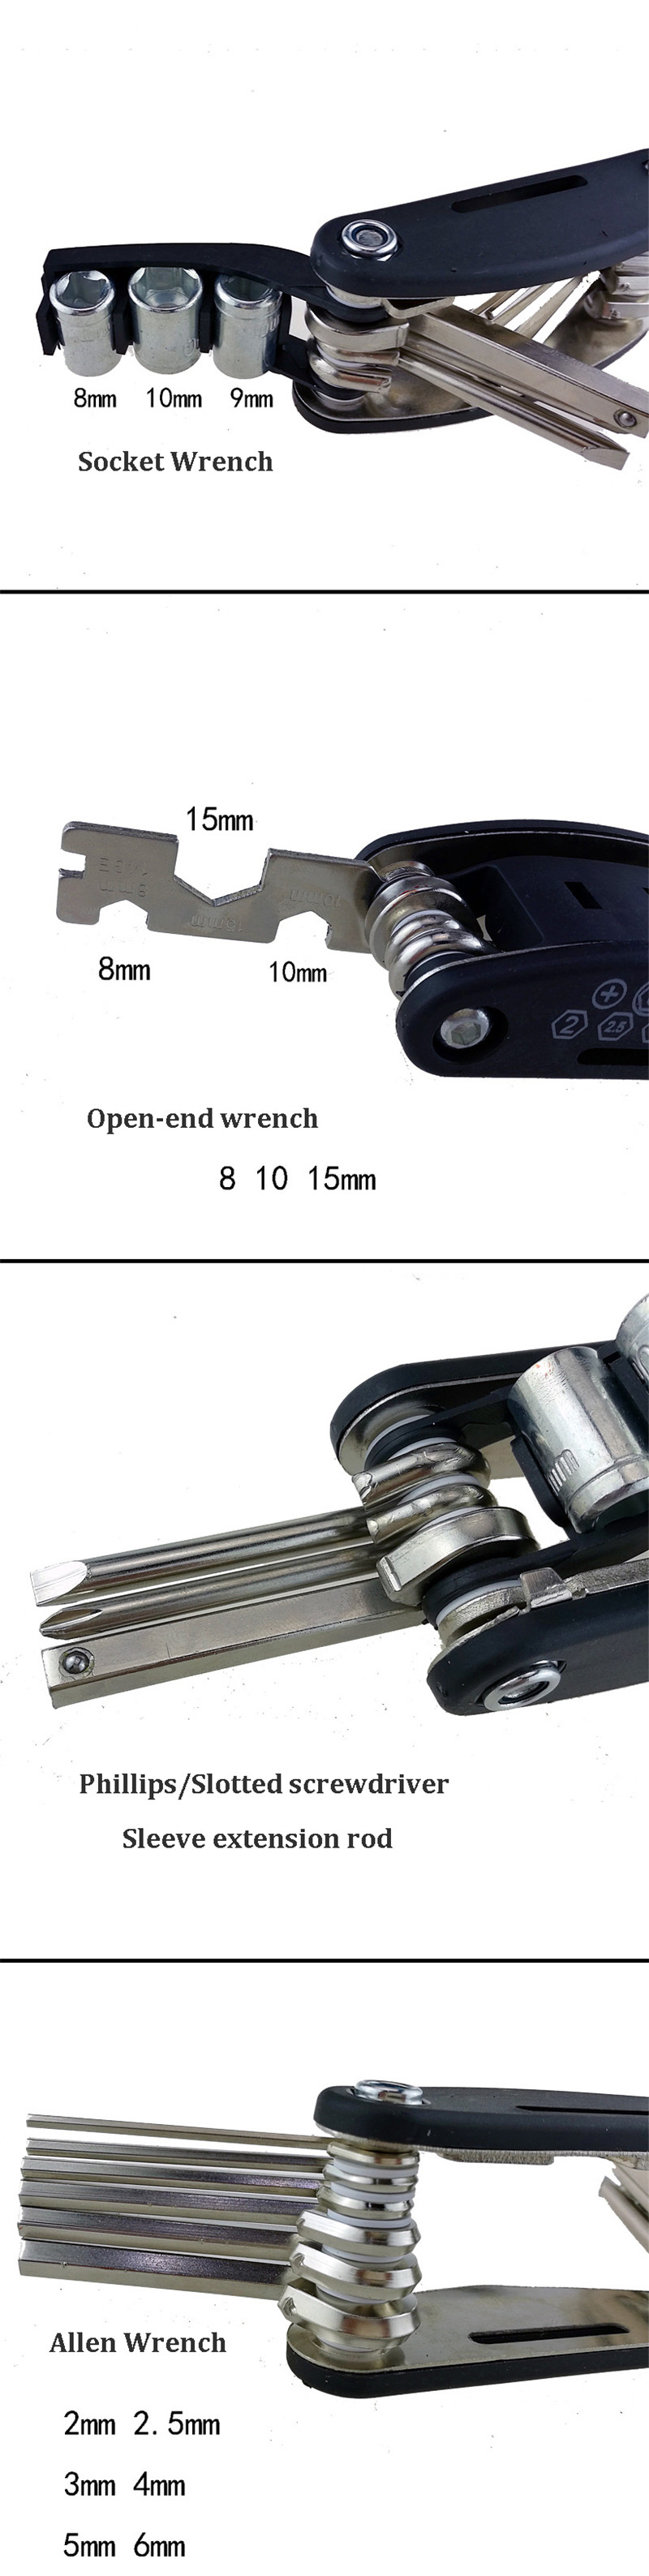 16-In-1-Multifunction-Repair-Tool-Kit-Hex-Wrench-Nut-Tire-Bicycle-Repair-Hex-Allen-Key-Screwdriver-S-1627440-6